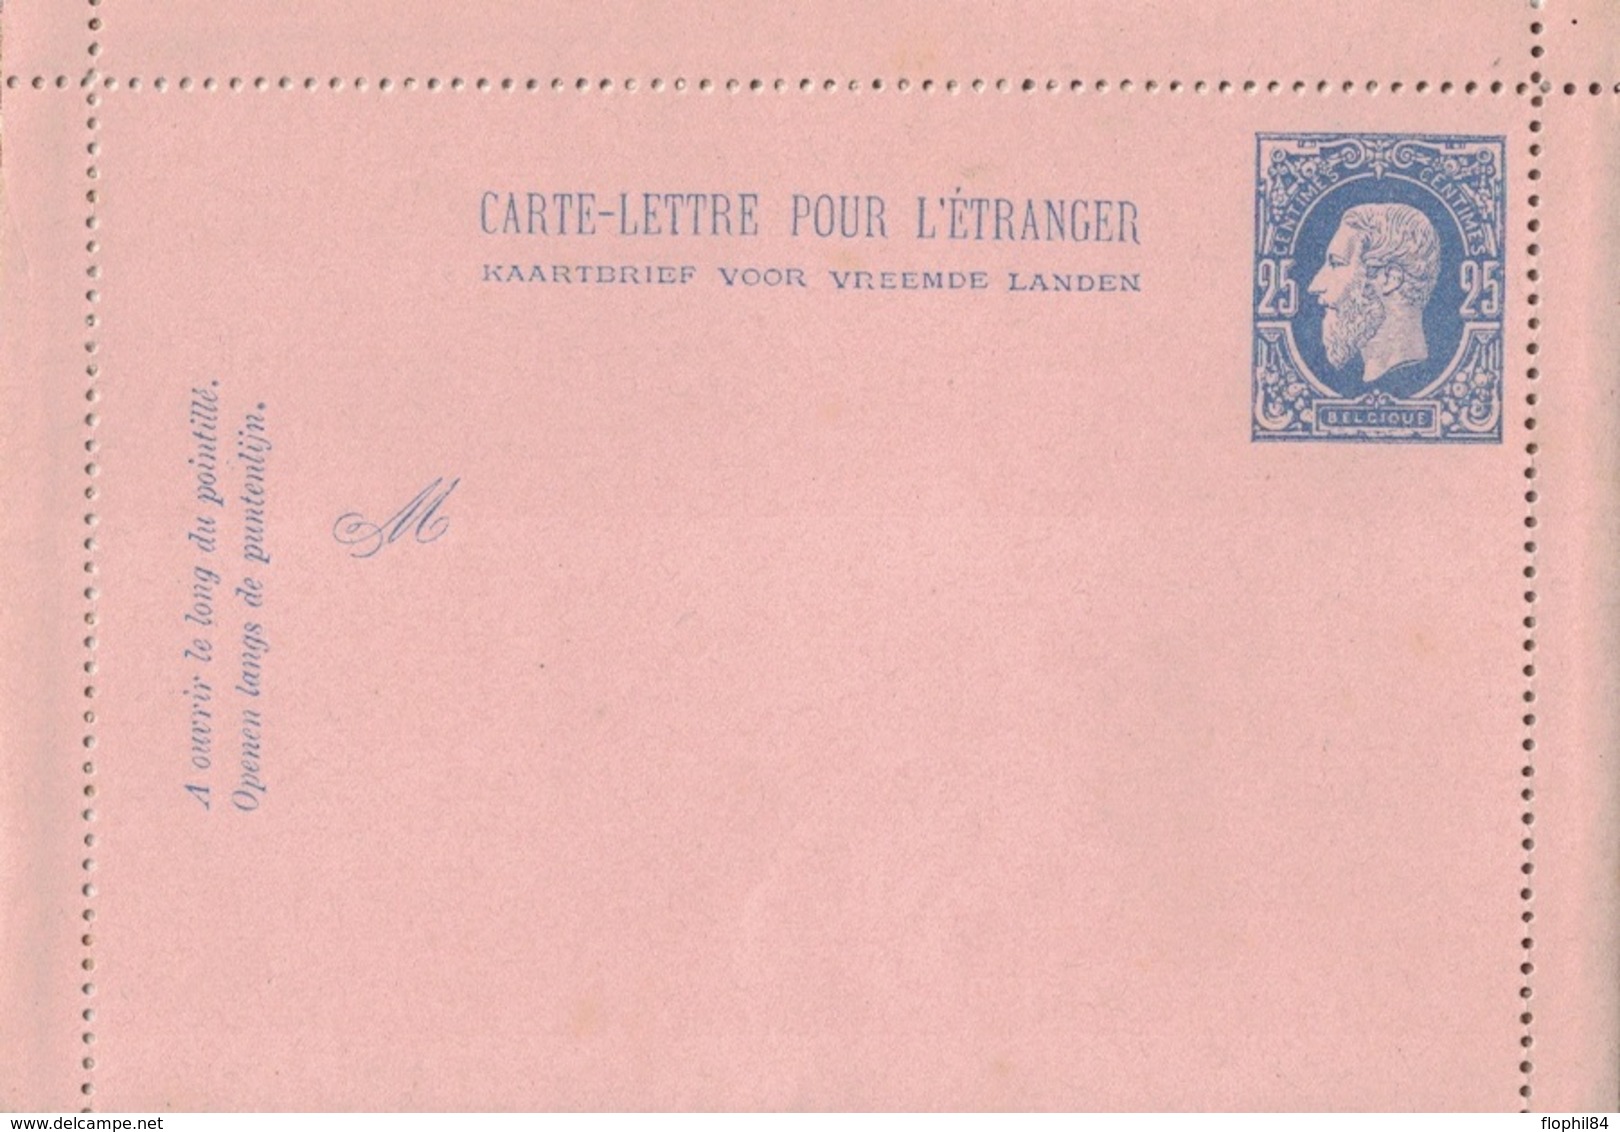 BELGIQUE - CARTE LETTRE NEUVE POUR L'ETRANGER - 25c BLEU. - Postbladen